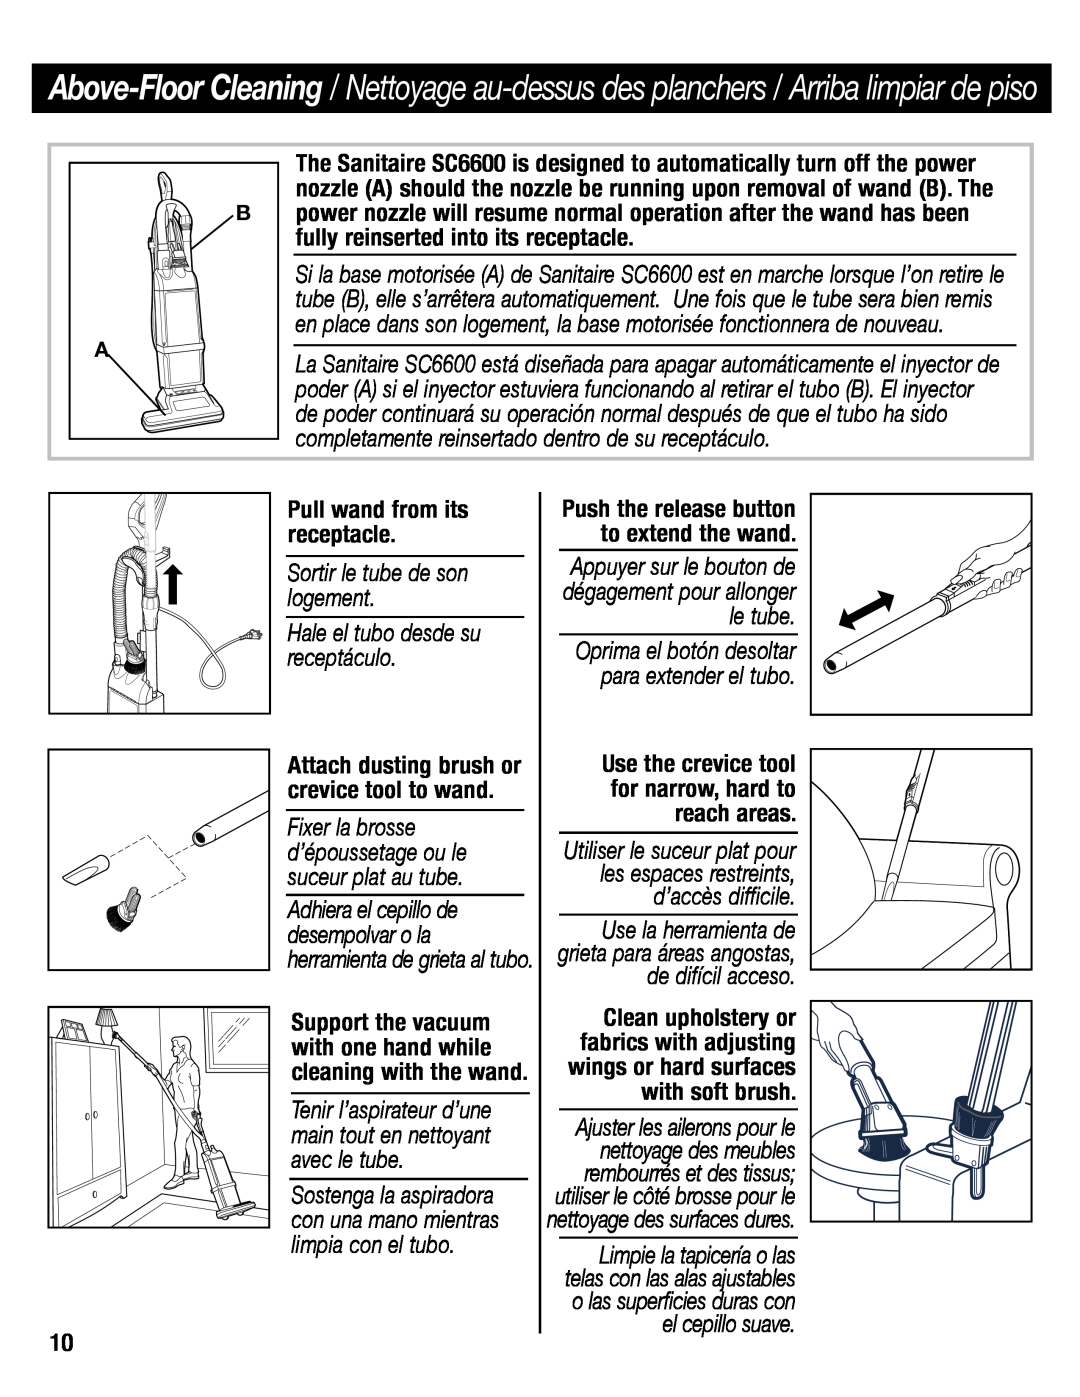 Sanitaire SC6600 manual Pull wand from its receptacle, Appuyer sur le bouton de dégagement pour allonger le tube 